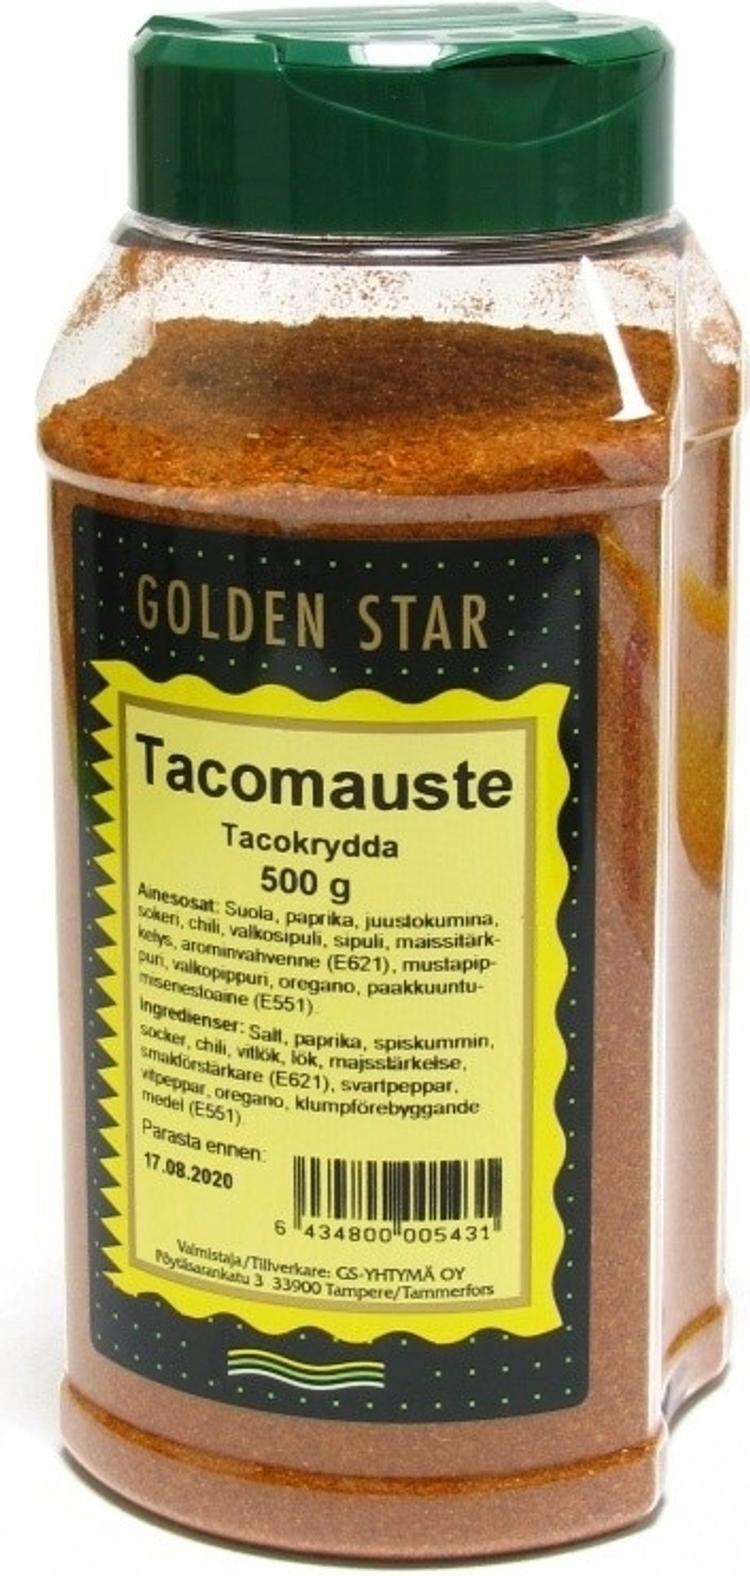 Golden Star 500g Tacomauste | S-kaupat ruoan verkkokauppa